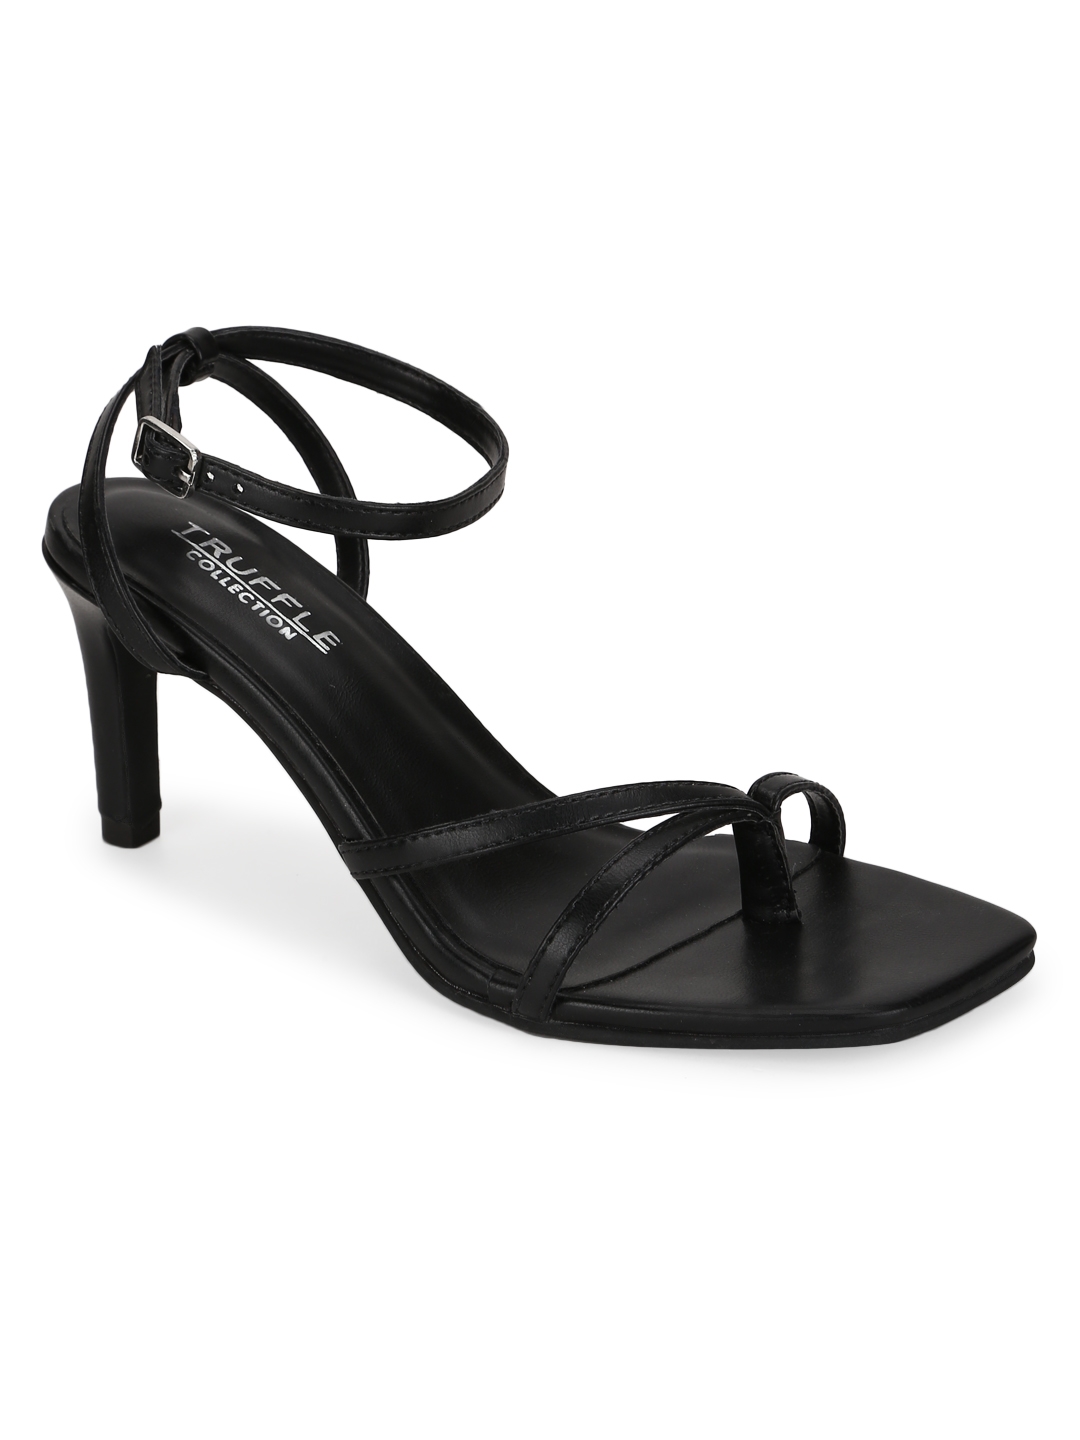 Truffle Collection | Black PU Strappy Stiletto Sandals